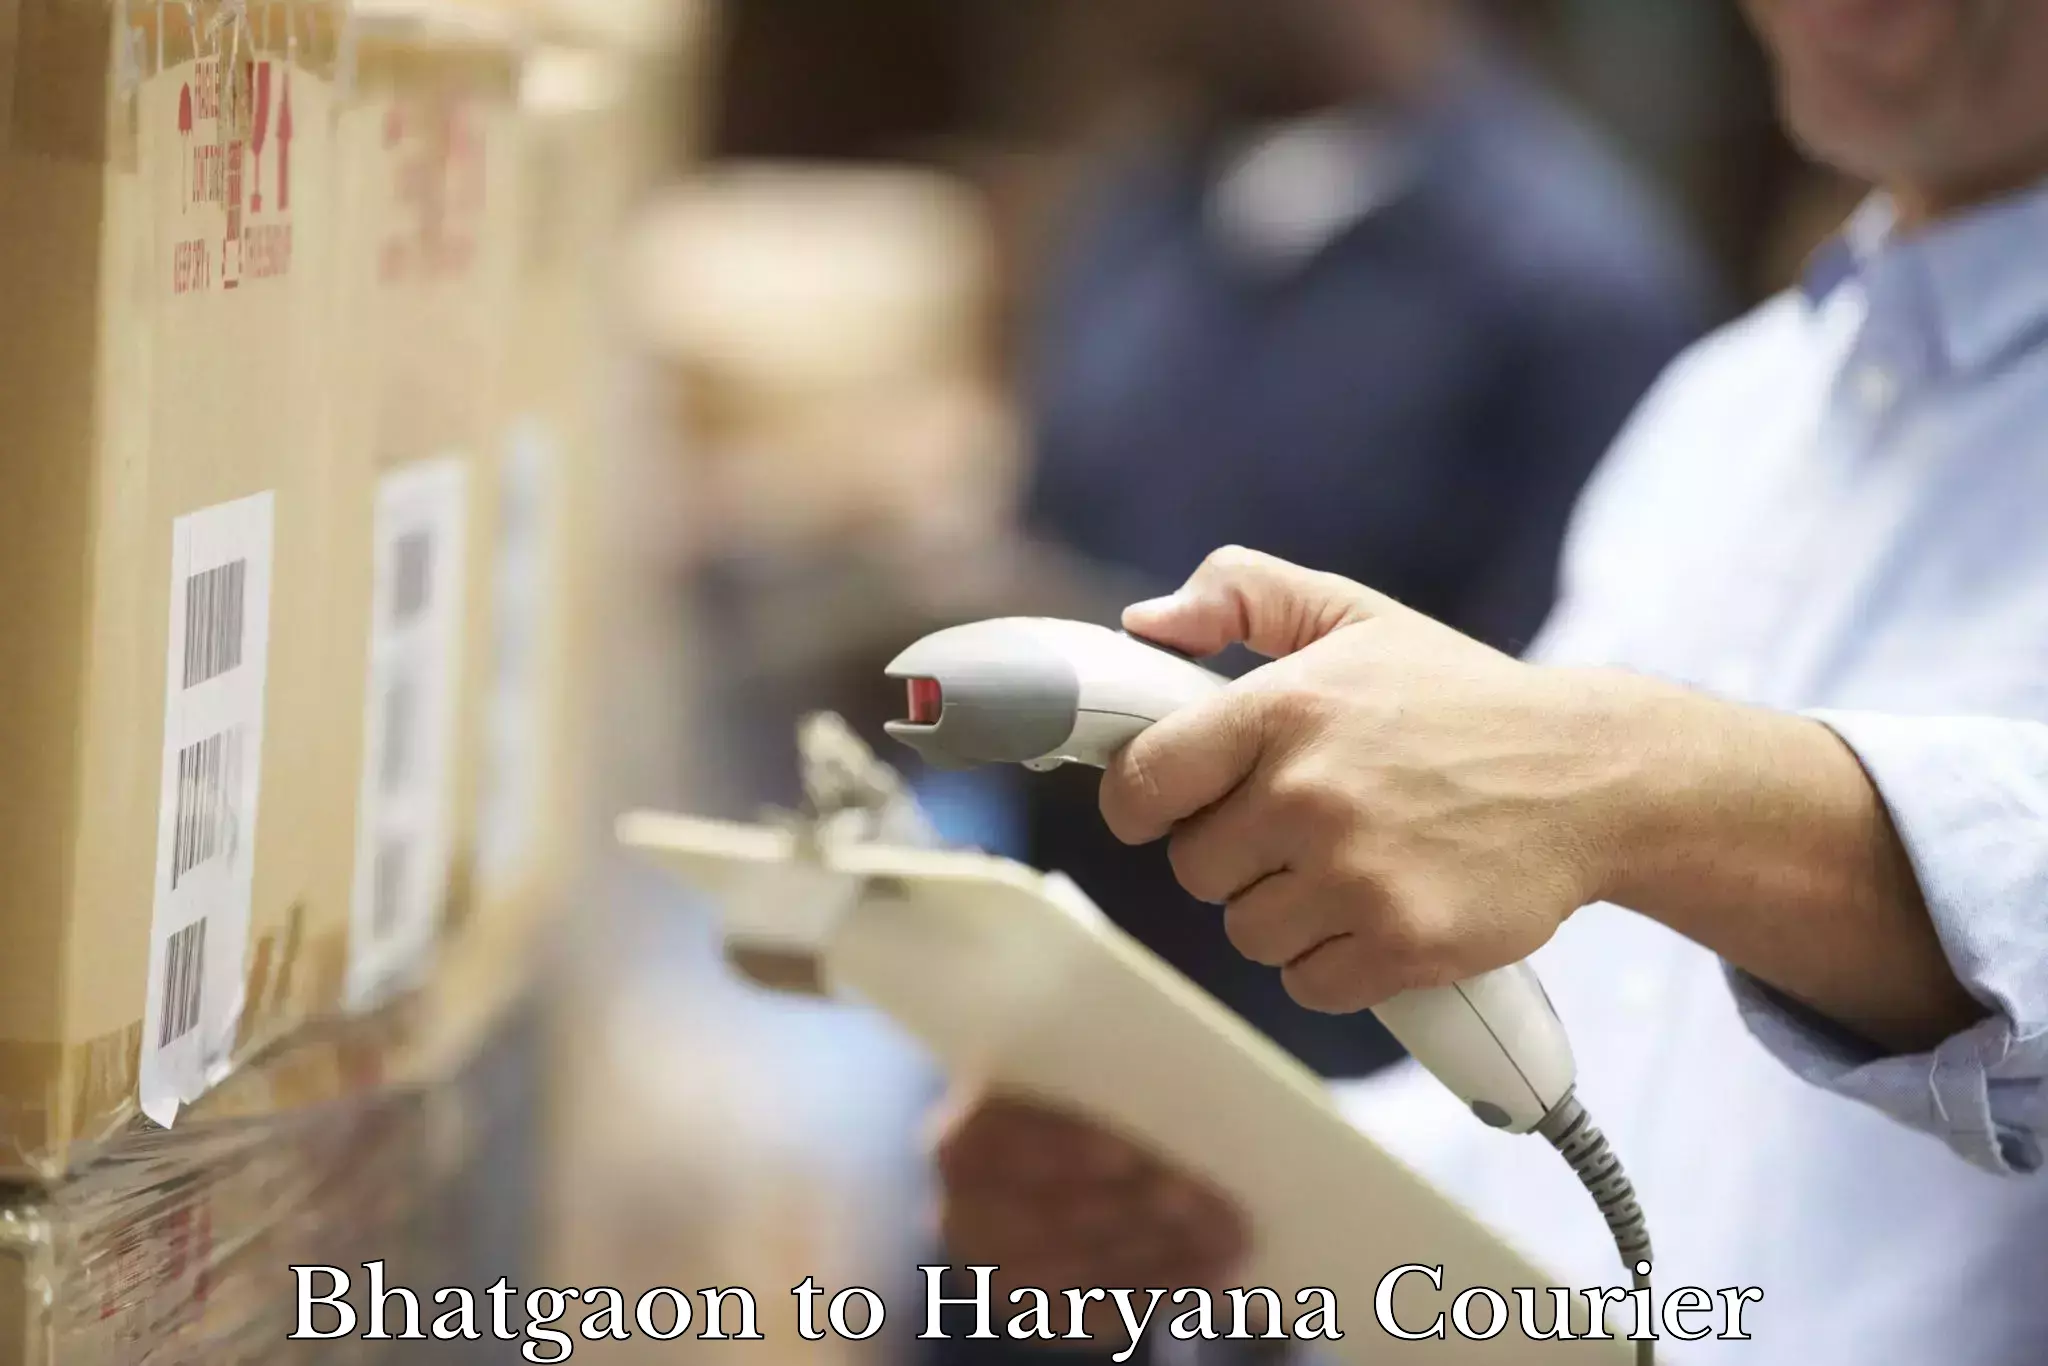 Efficient shipping platforms Bhatgaon to Chaudhary Charan Singh Haryana Agricultural University Hisar